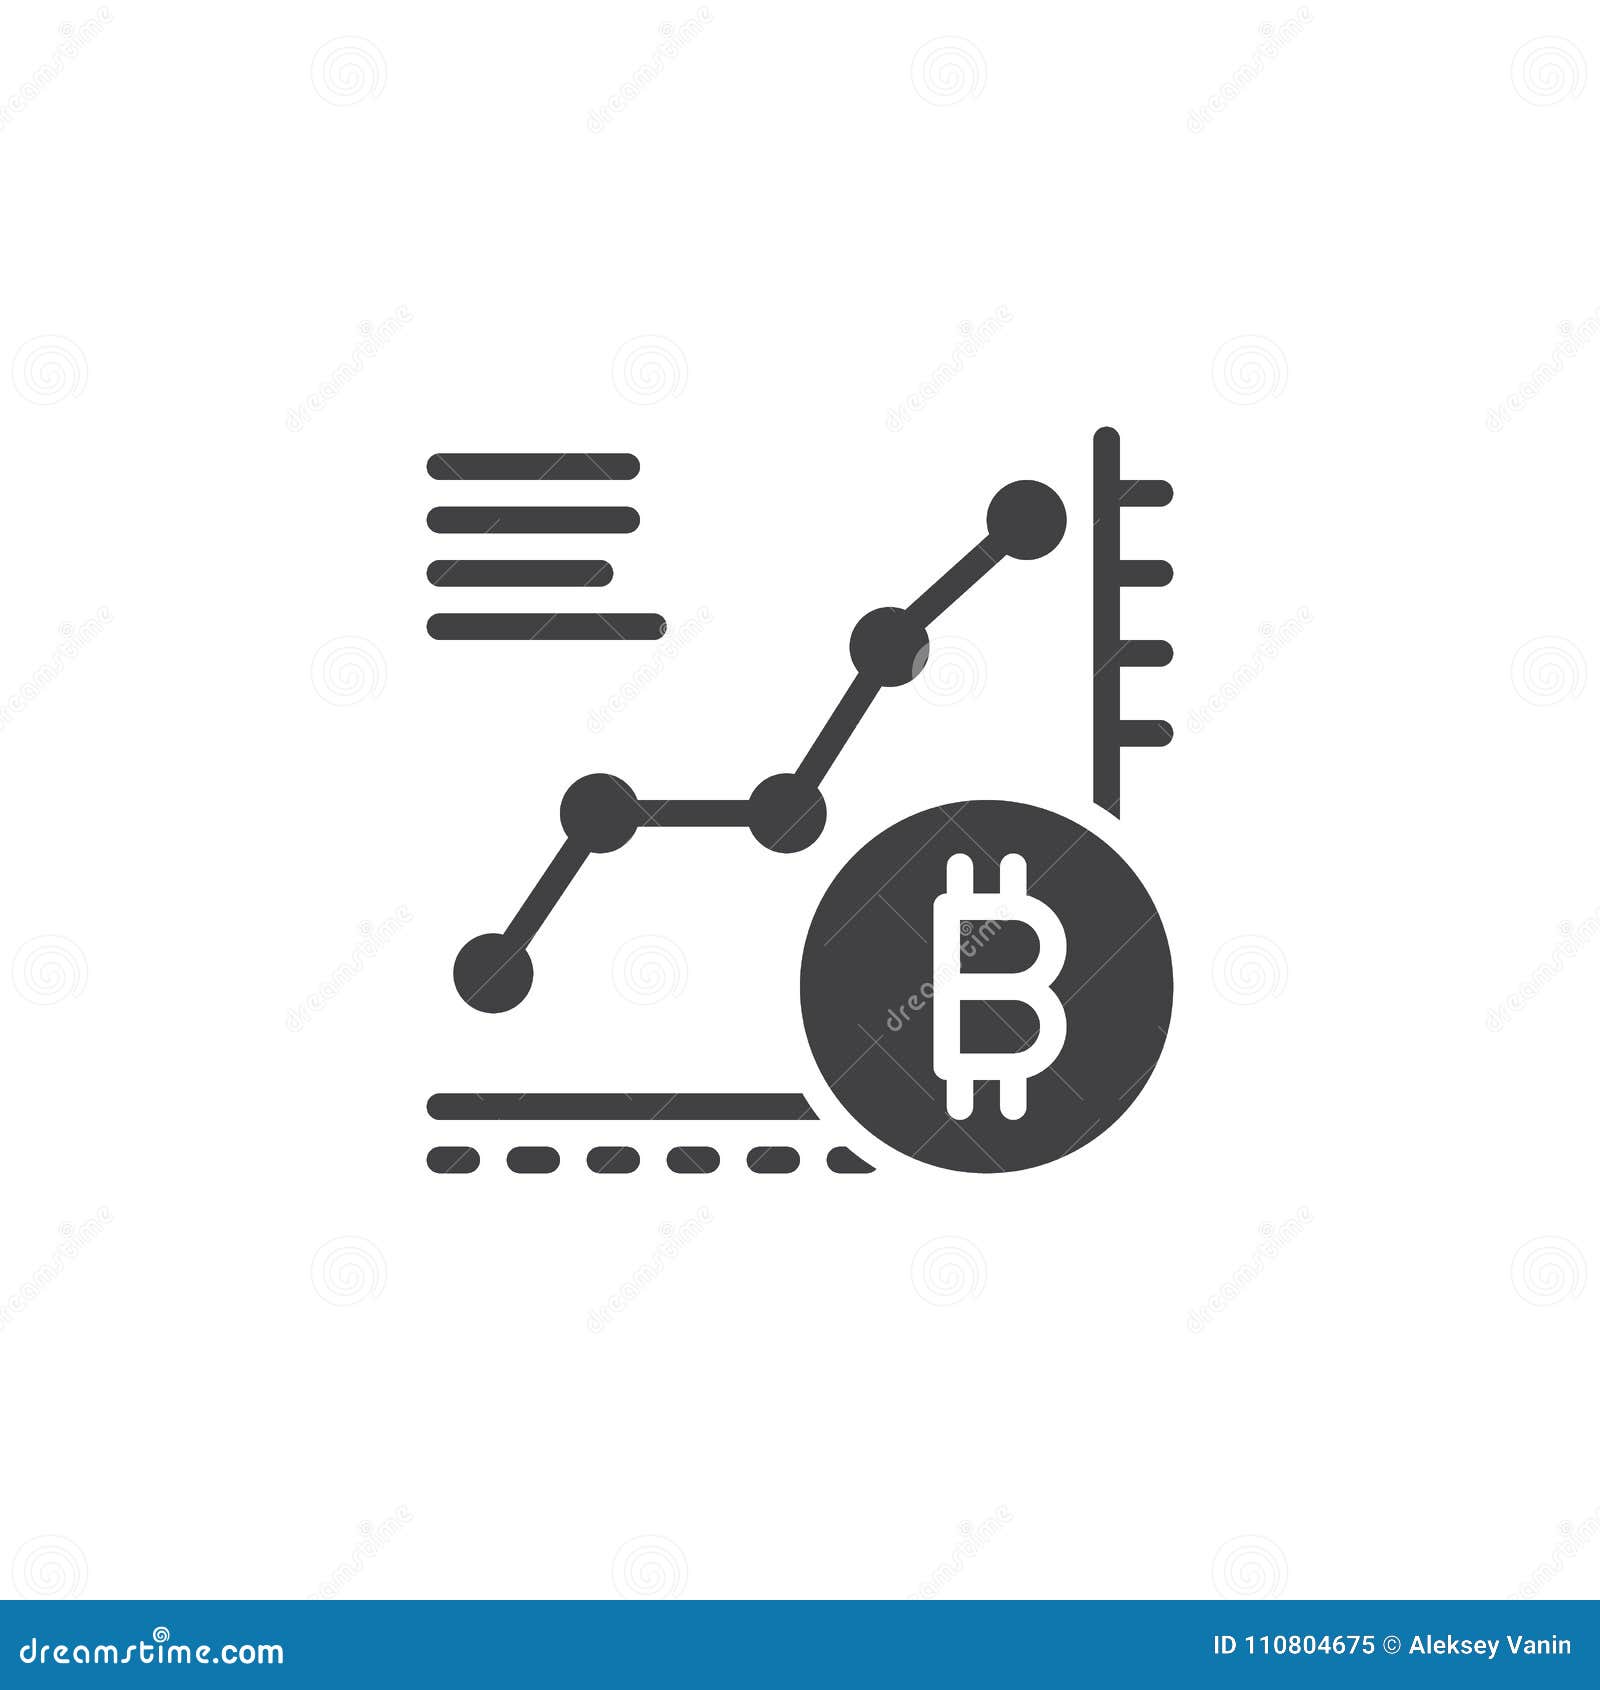 Bitcoin Growth Chart